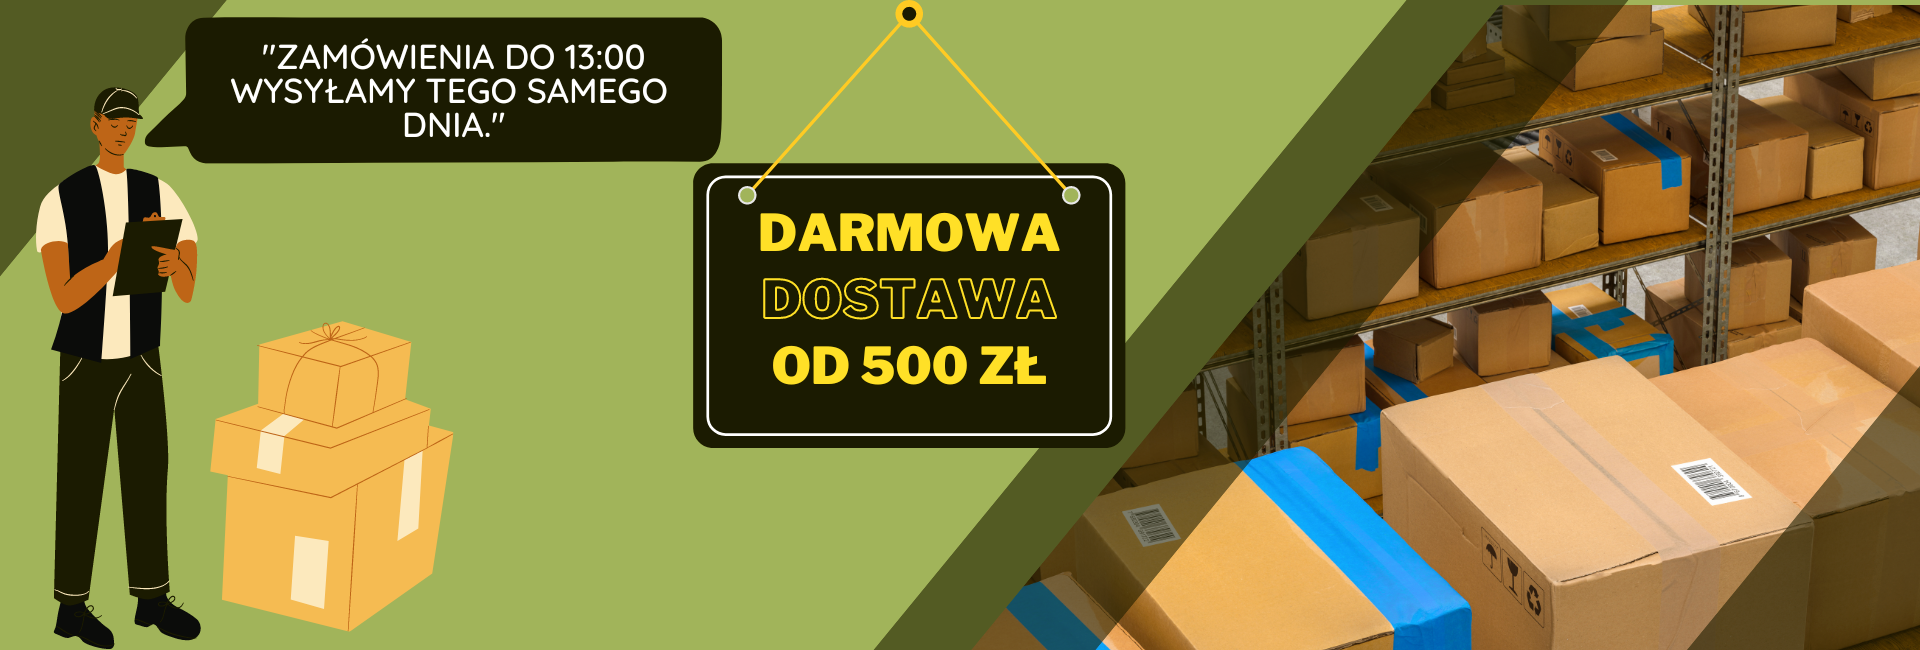 Darmowa-dostawa-od-500-zl-e-metal-pl(1)